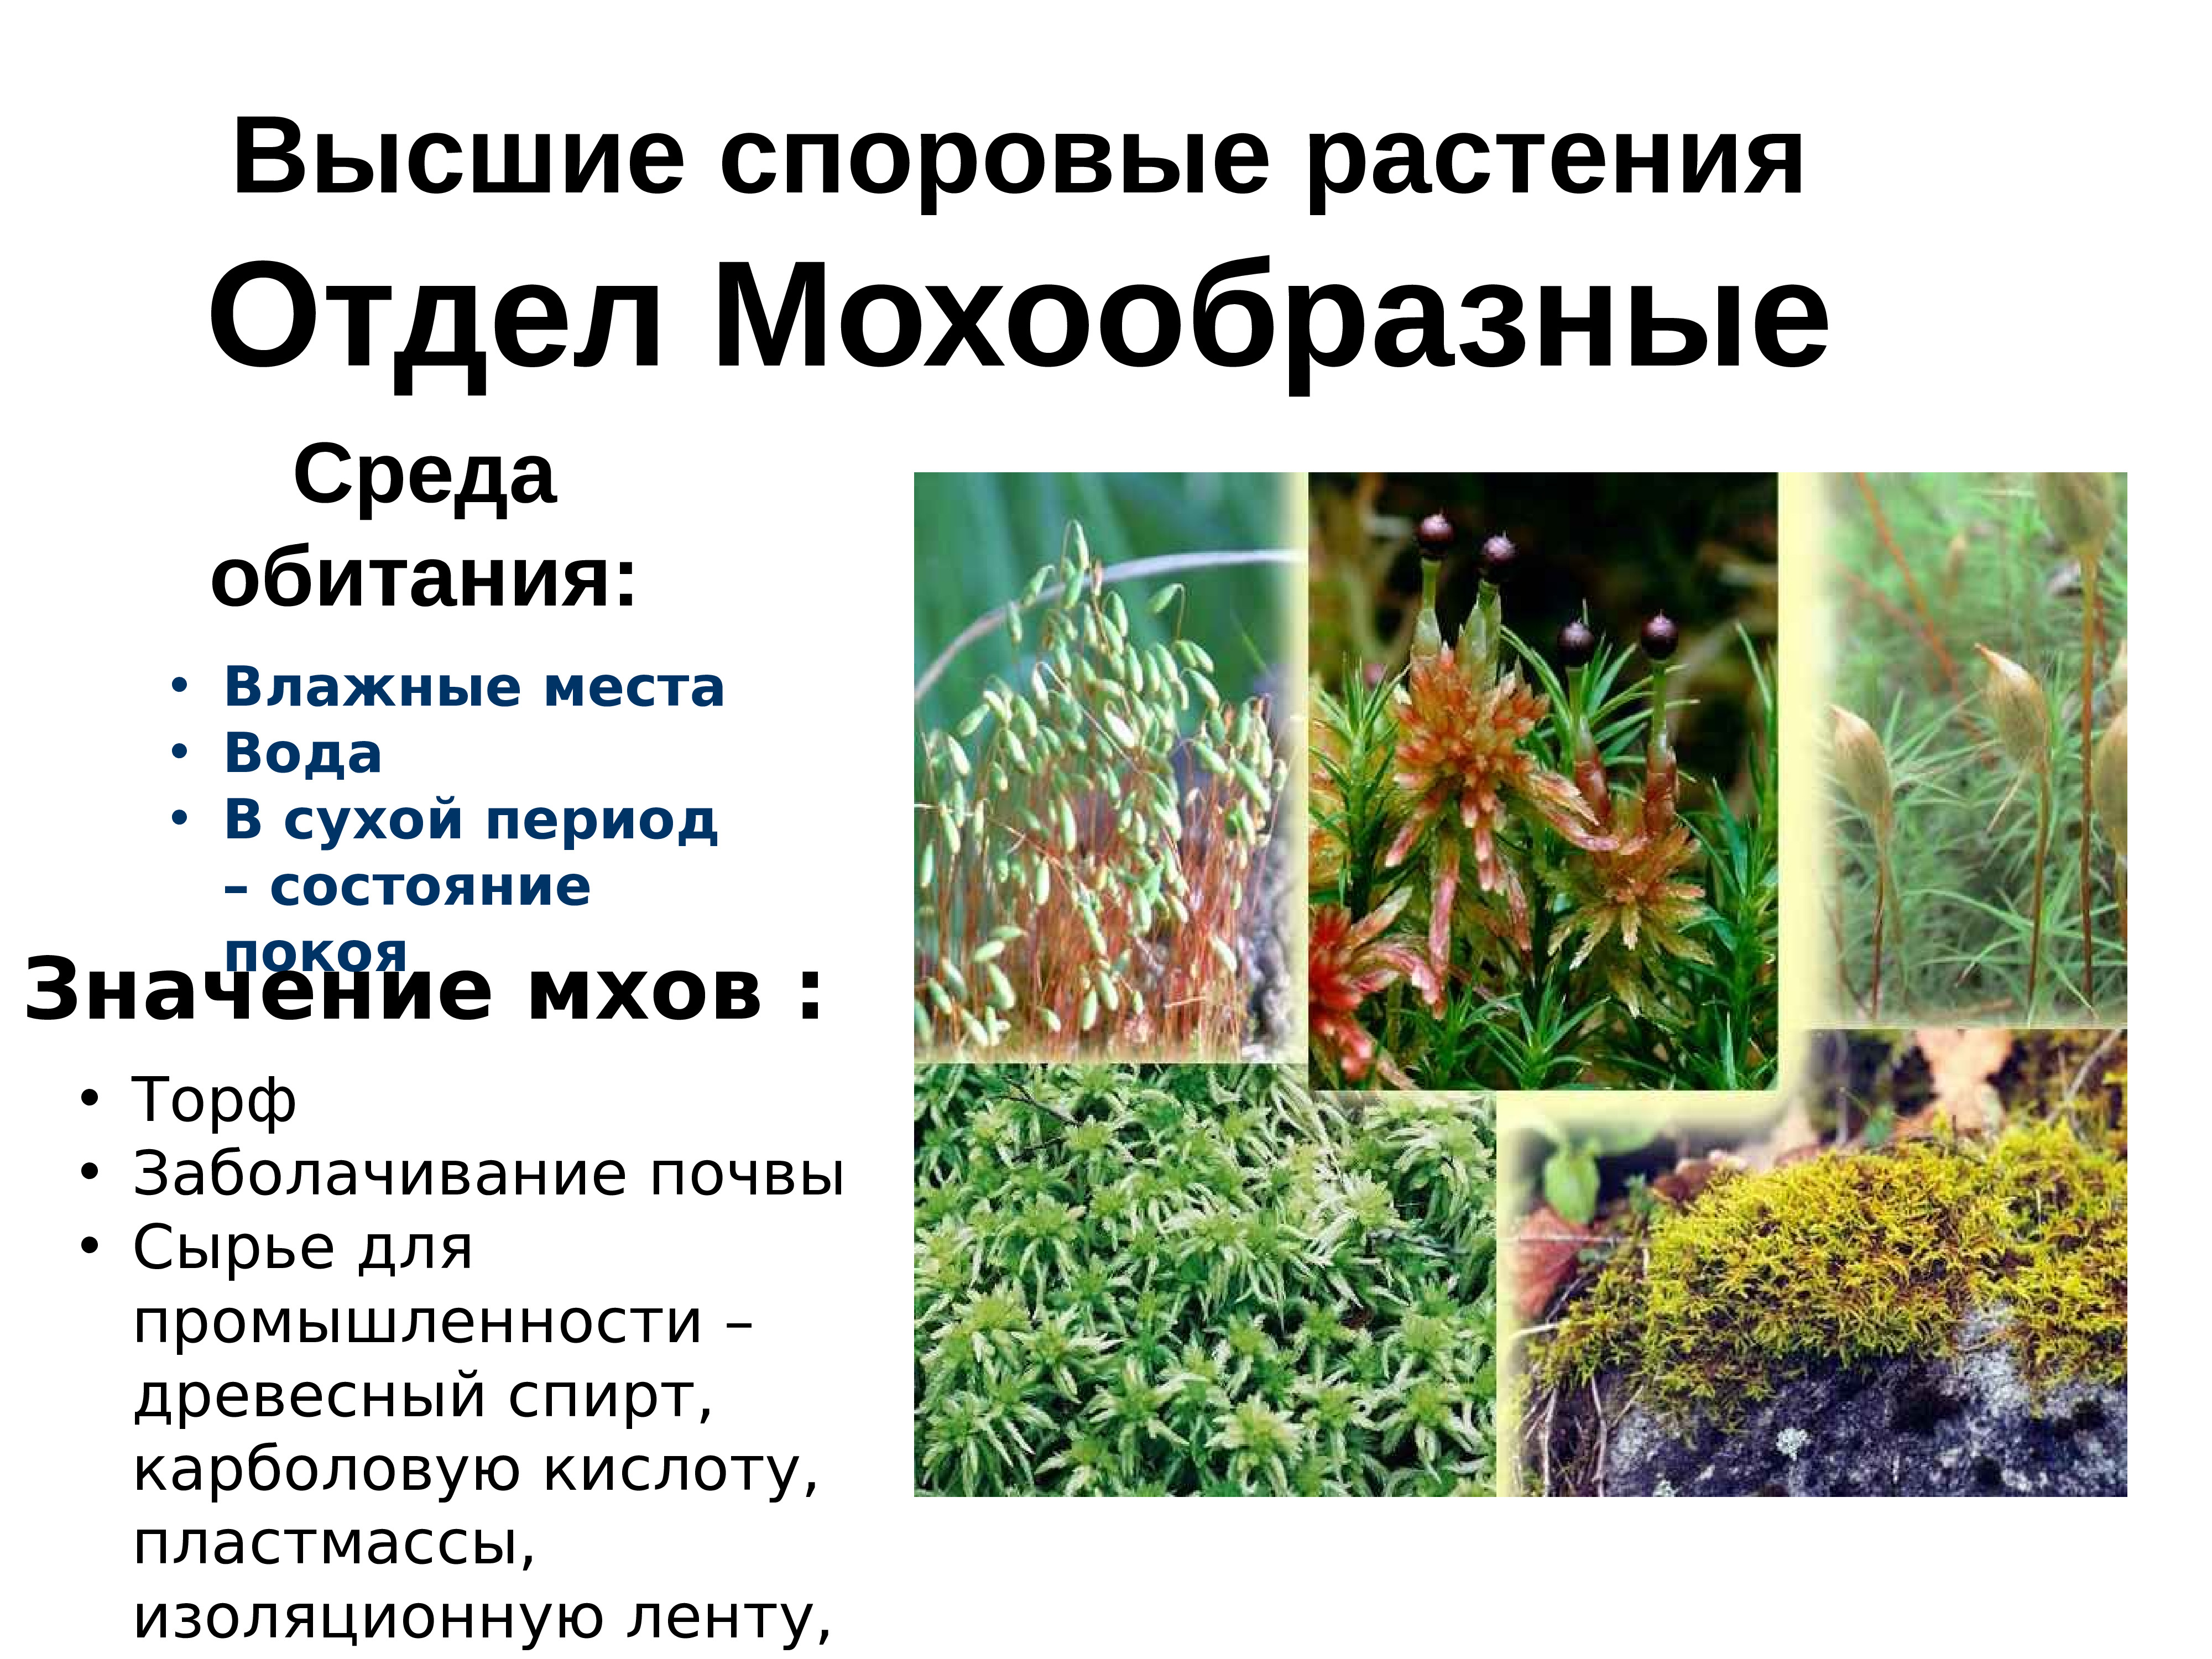 Почему мох называют споровым растением. Высшие споровые растения. Мхи хвощи папоротники. Высшие споровые растения это в биологии. Высшиесплровые растения.